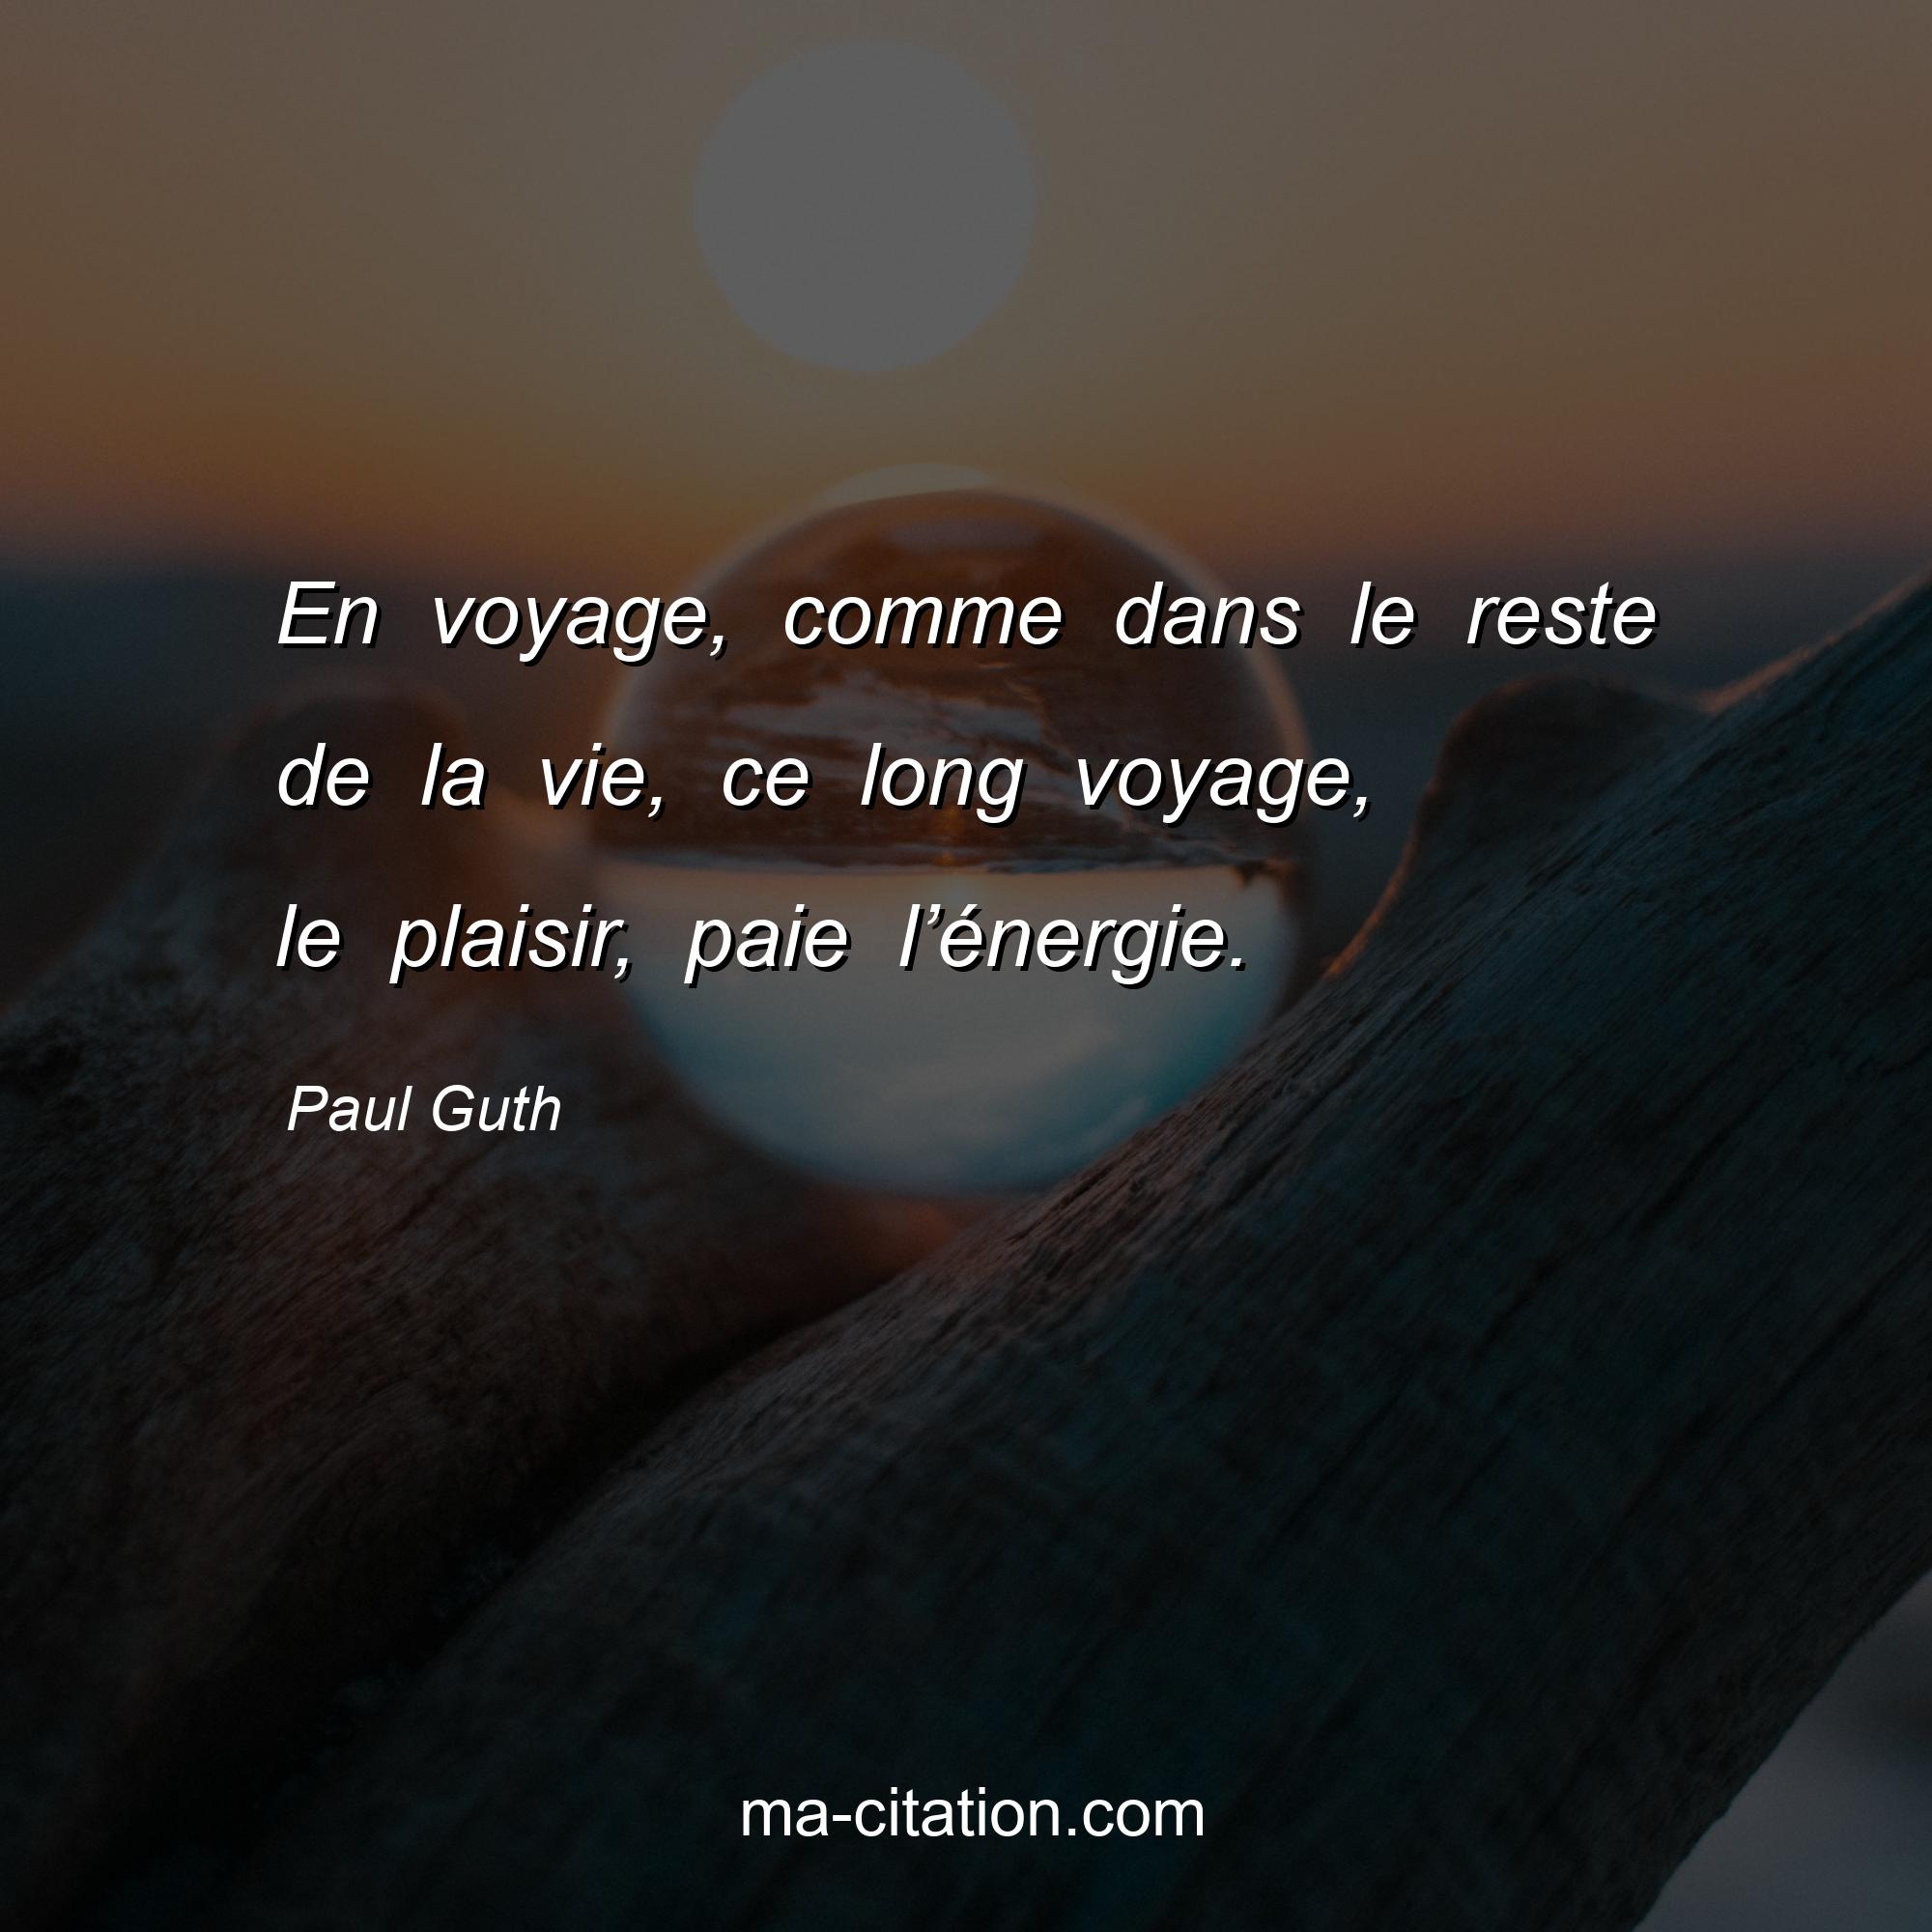 Paul Guth : En voyage, comme dans le reste de la vie, ce long voyage, le plaisir, paie l’énergie.